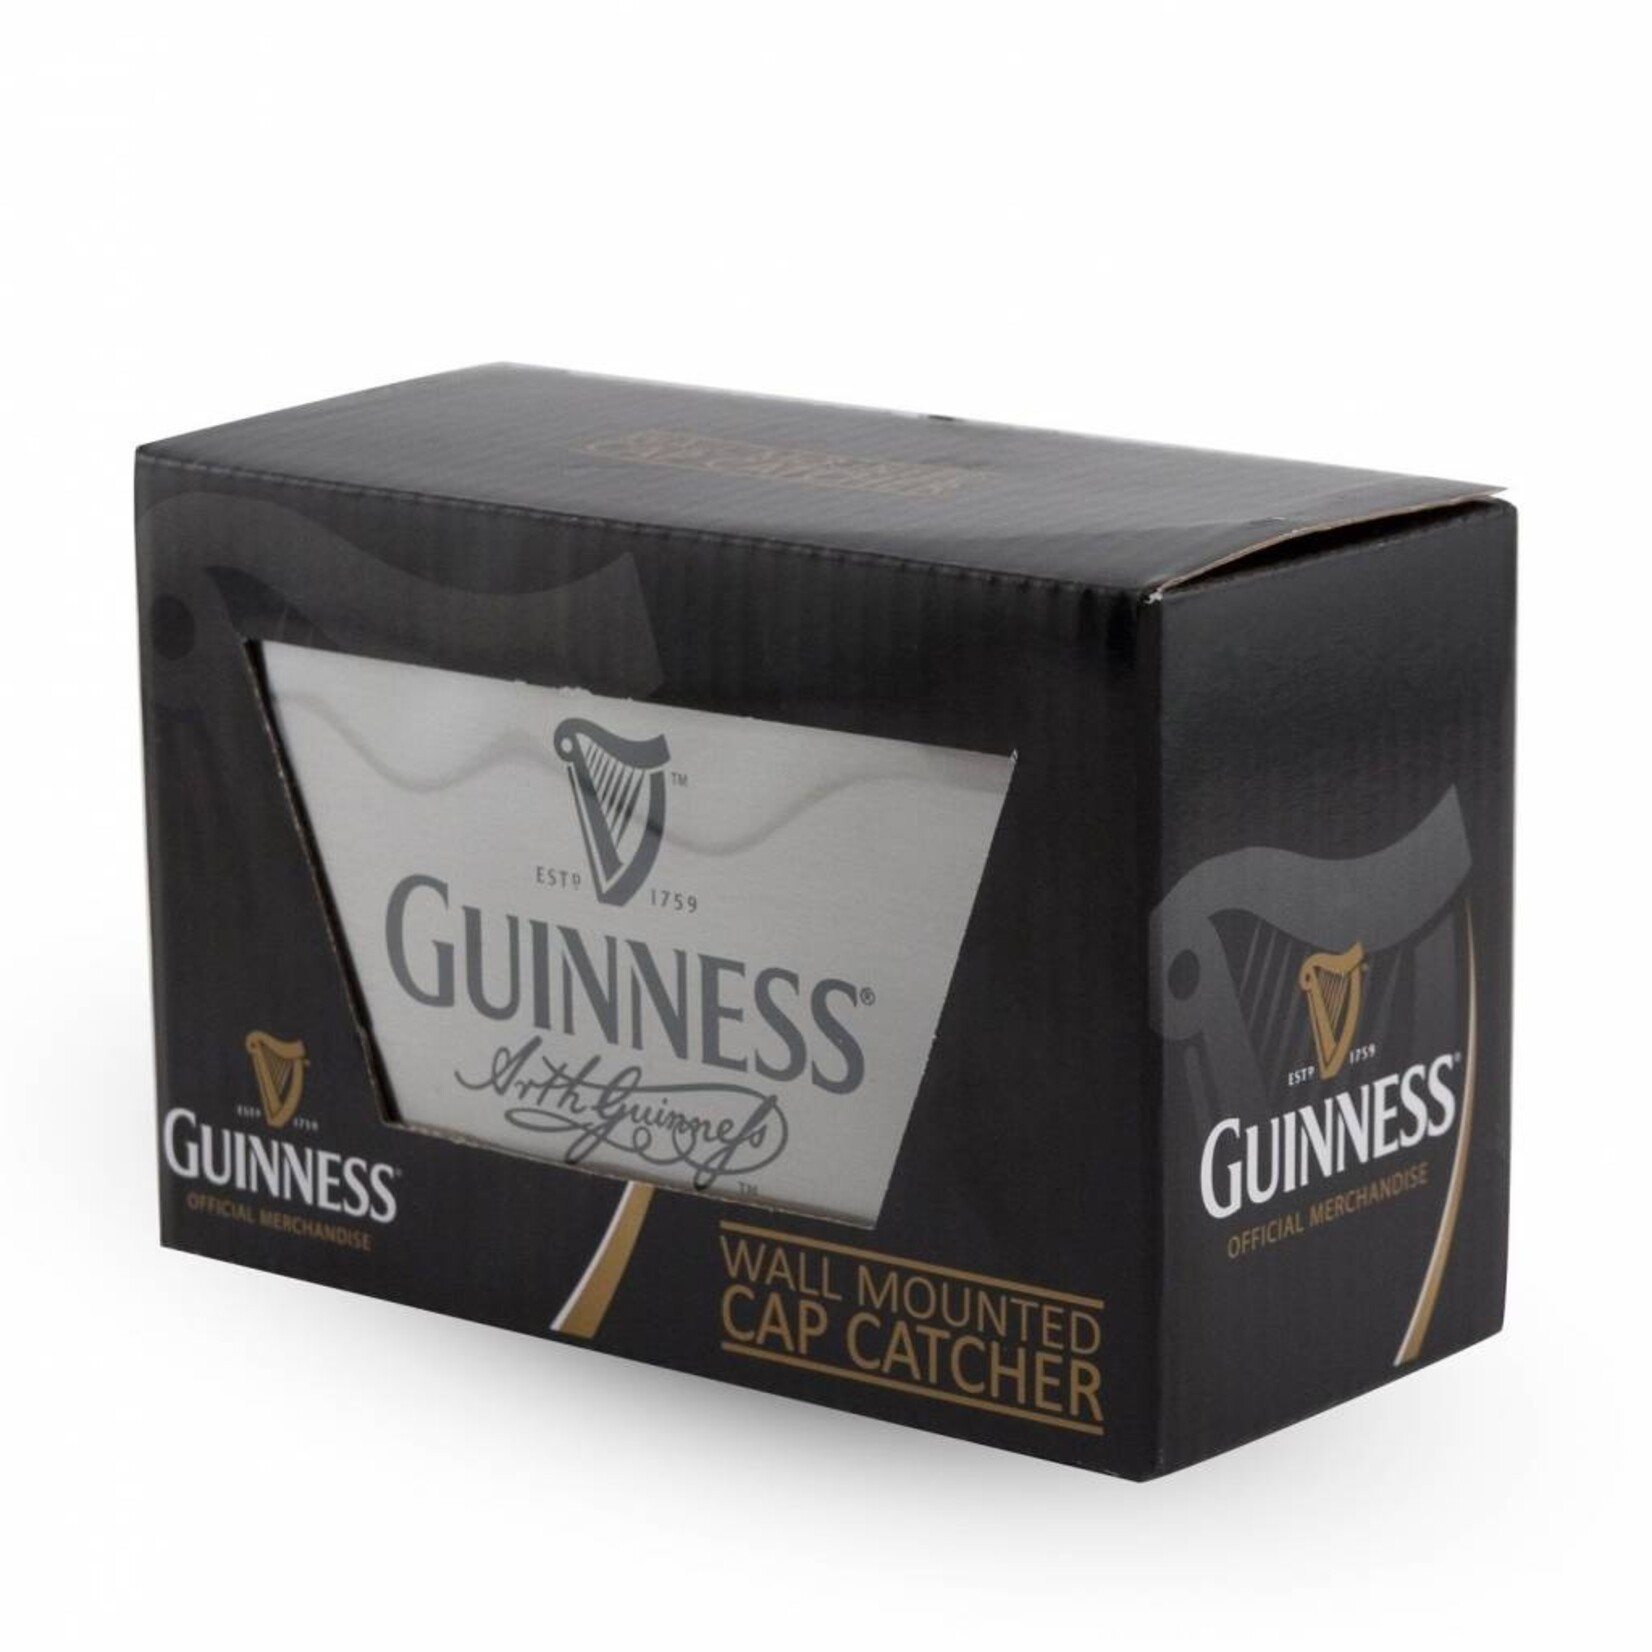 Guinness Guinness Wall Mounted Cap Catcher